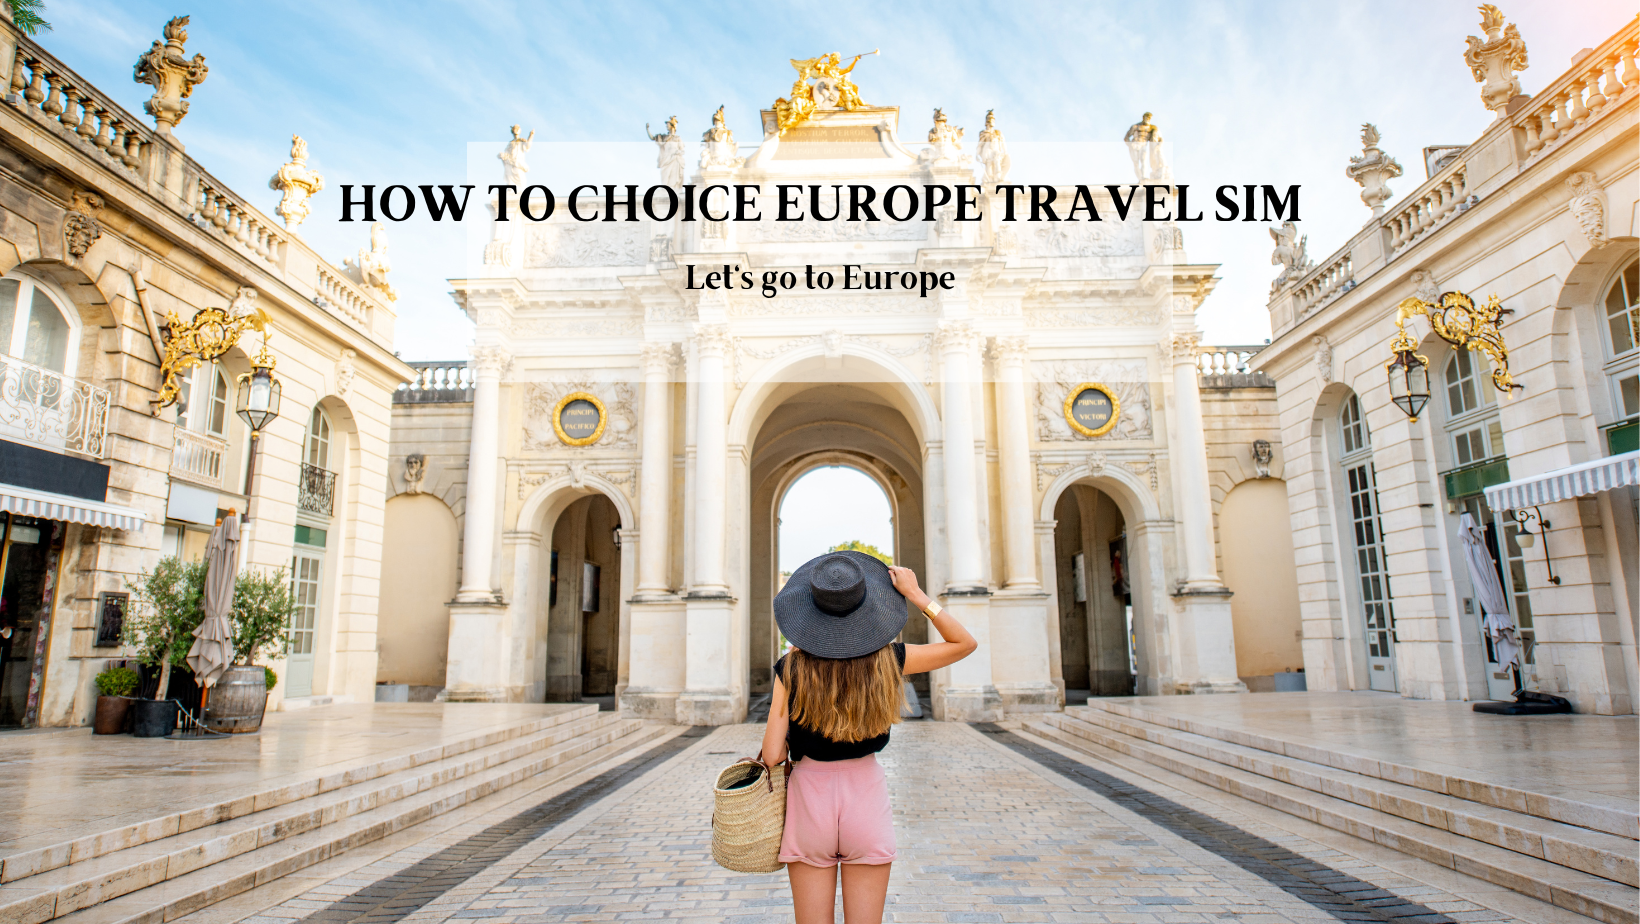 Una guía para elegir tarjetas SIM de viaje prepagas para Europa y el R